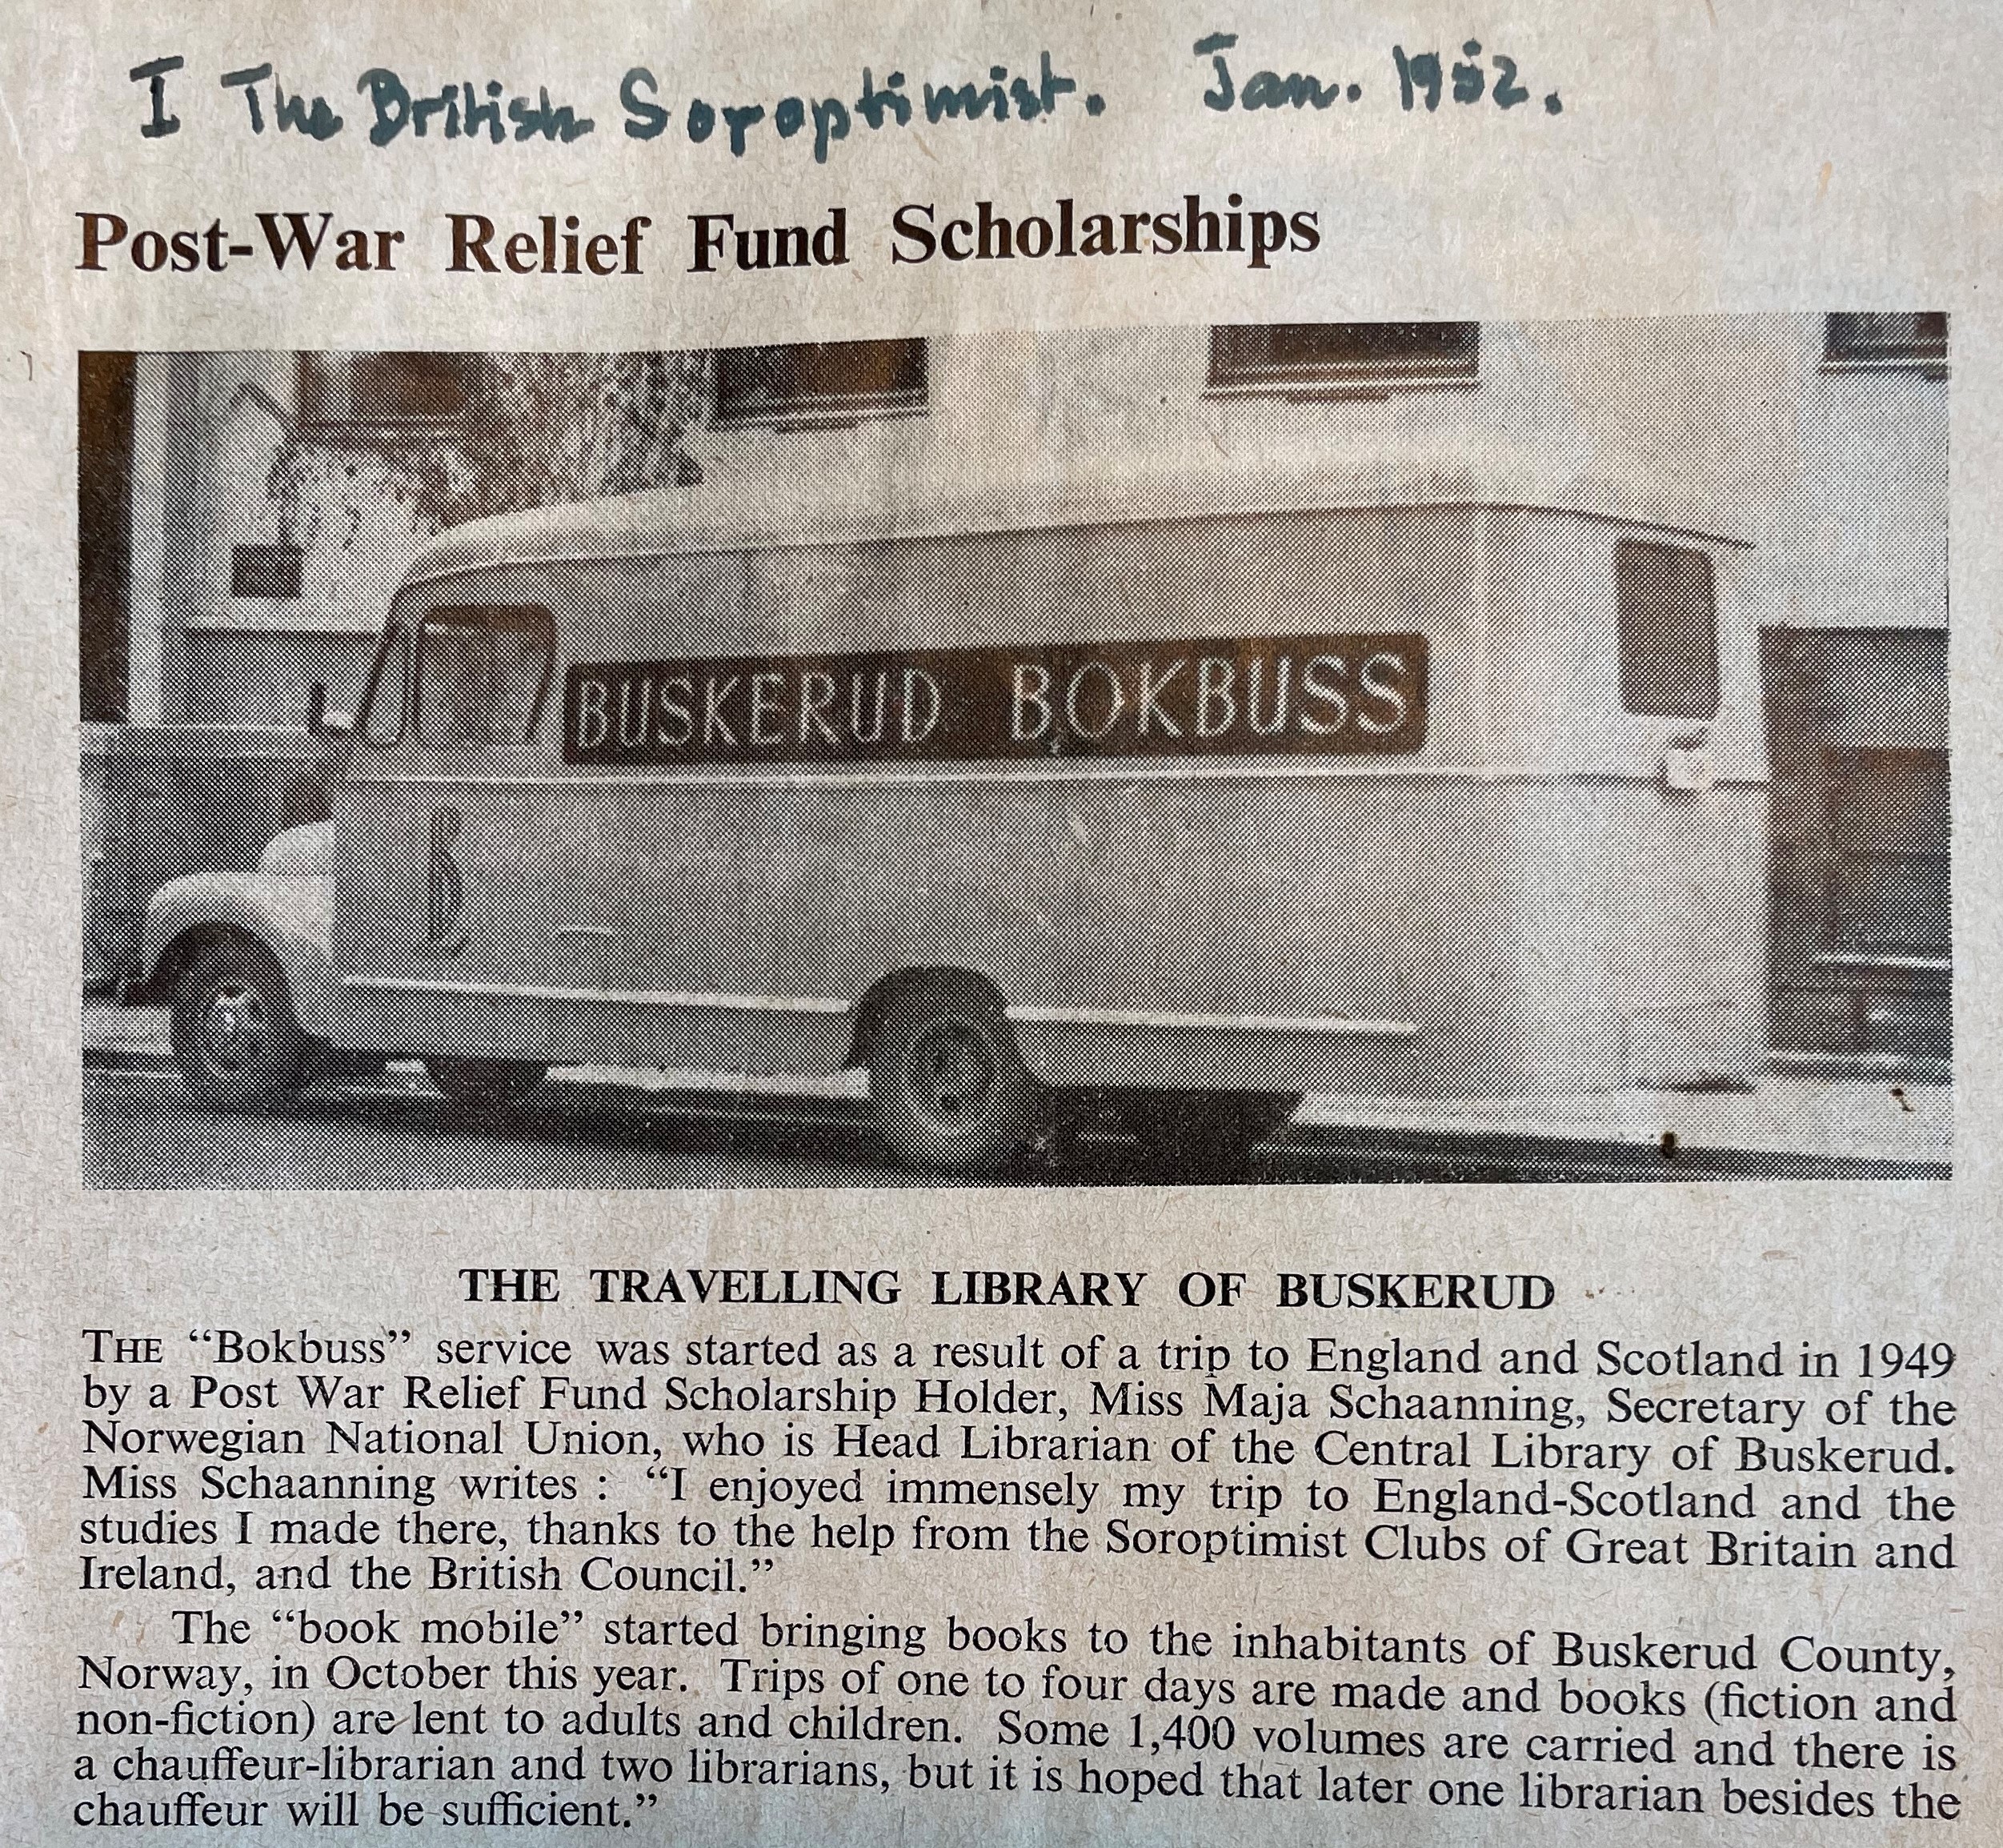 Buskerud bokbuss avisutklipp på engelsk fra the British Soroptimist 